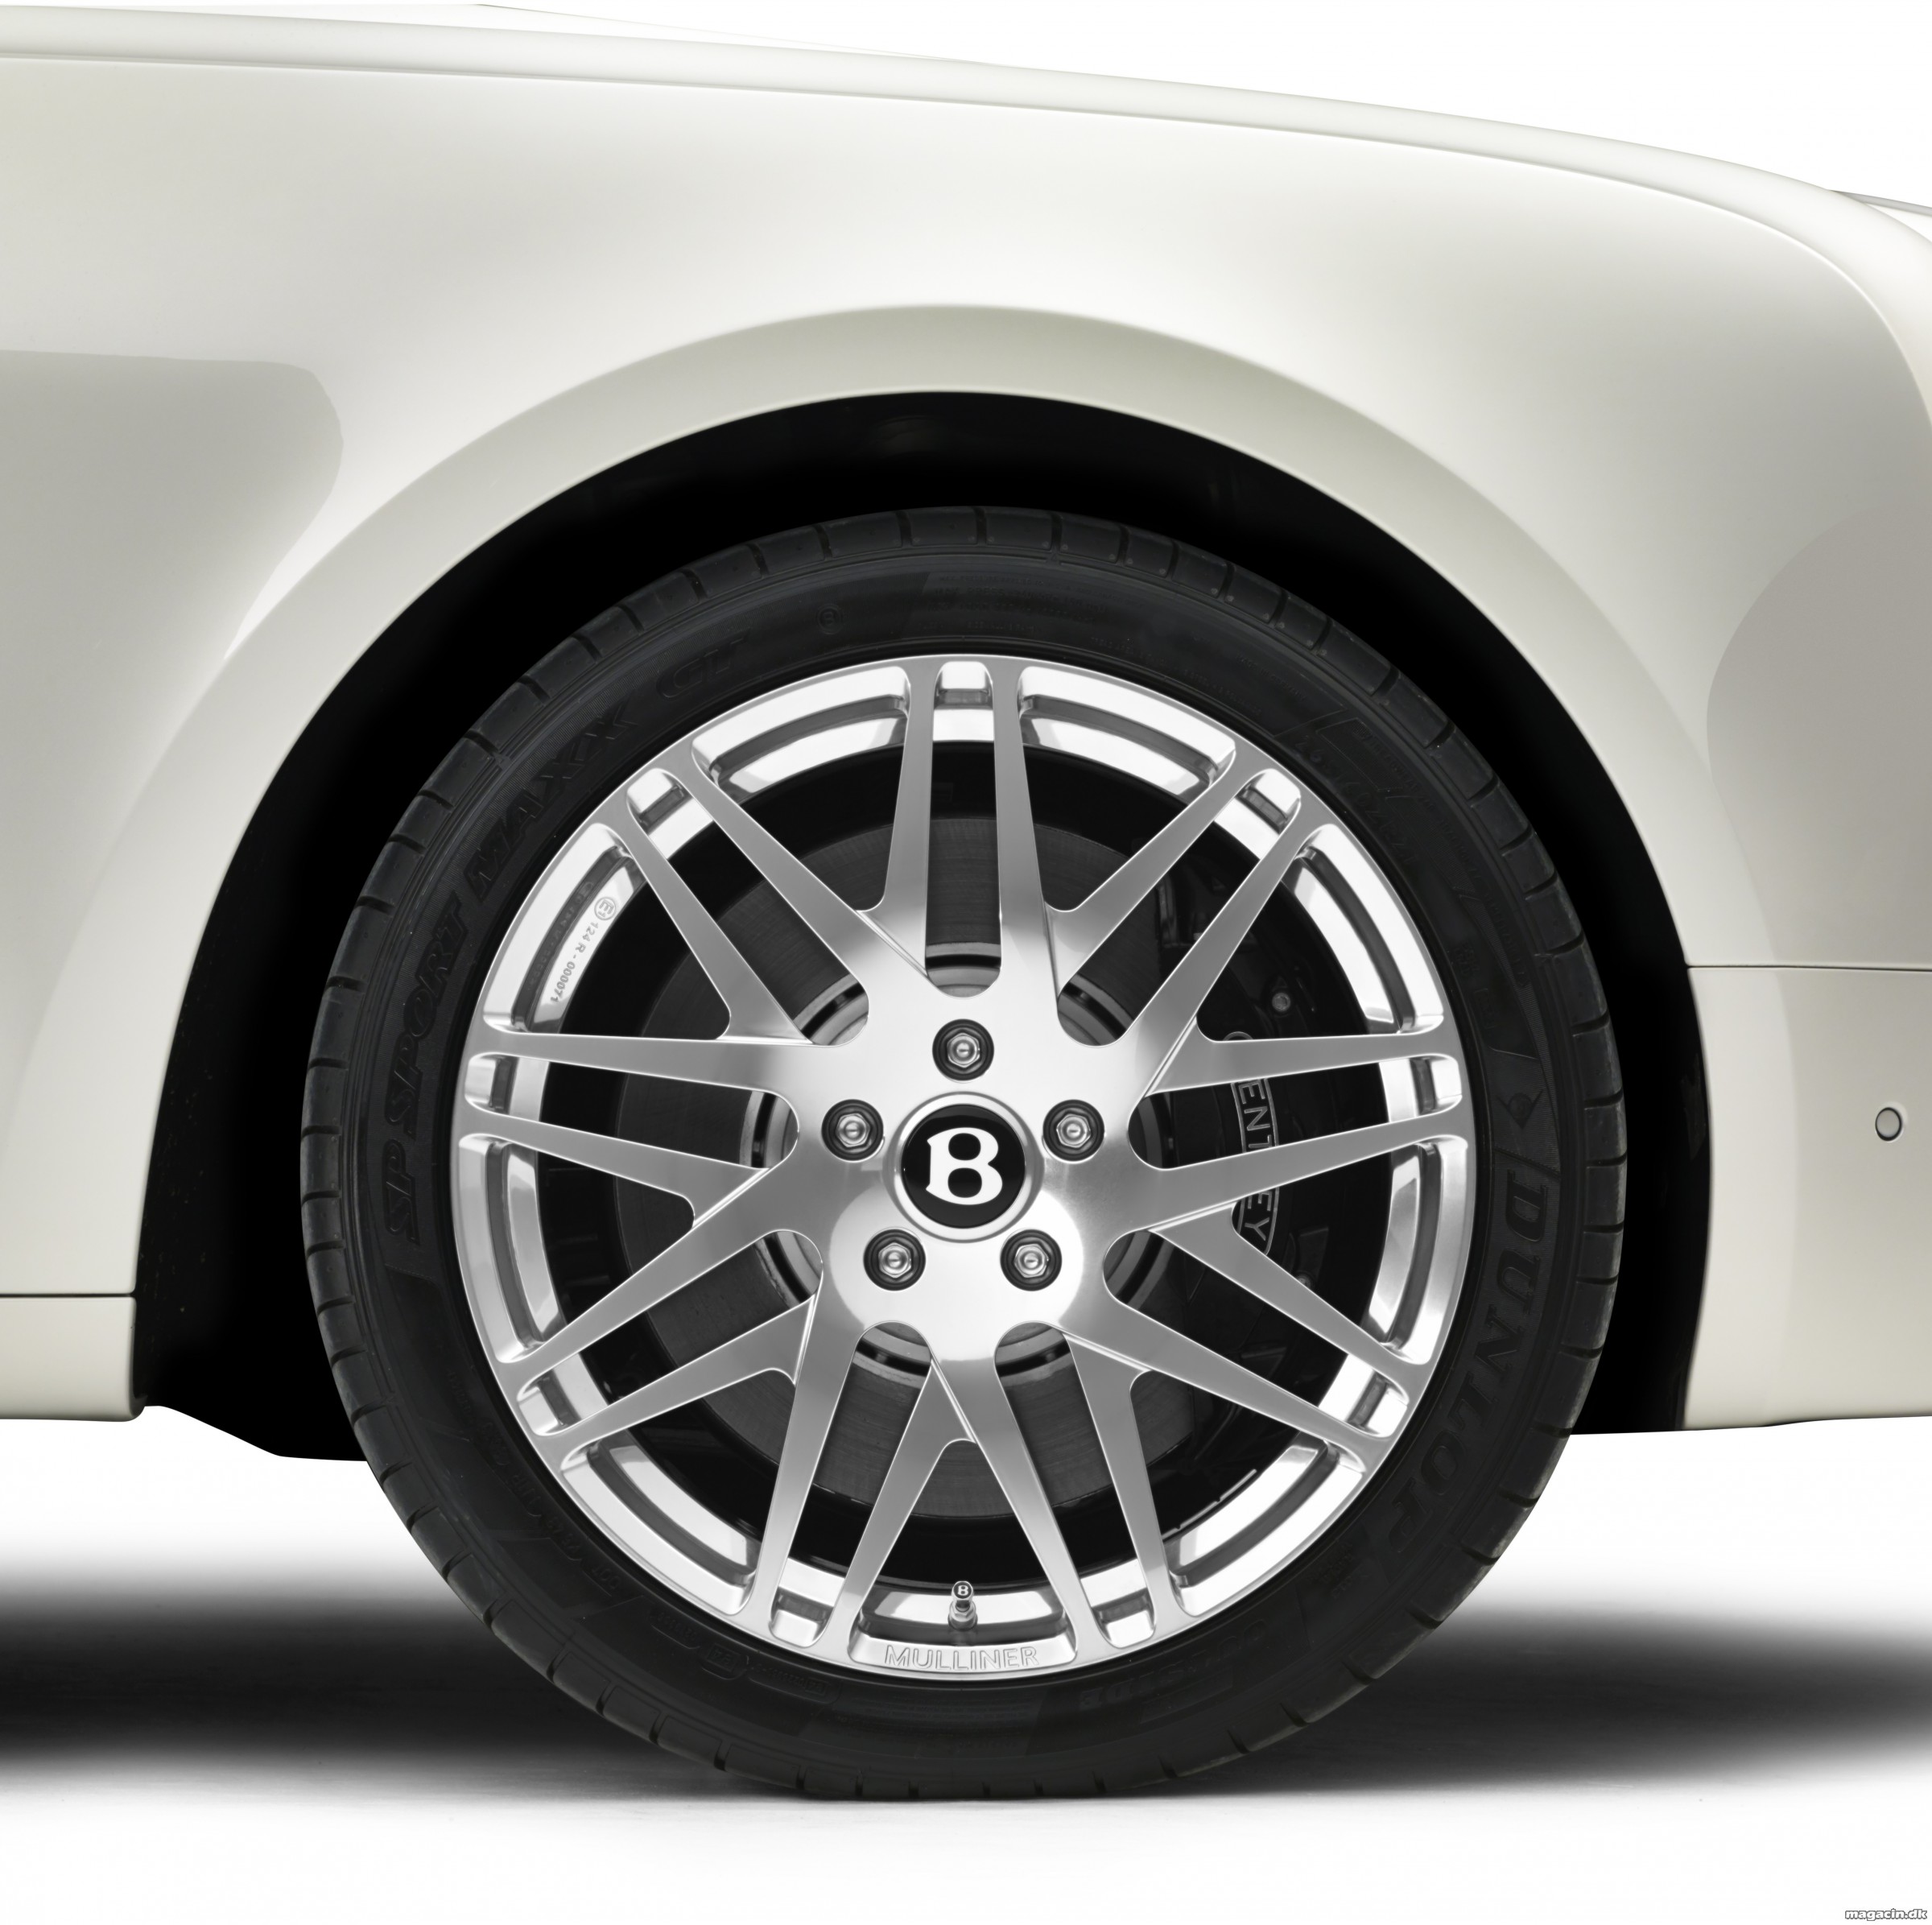 Bentley afslører ny limited edition Mulsanne